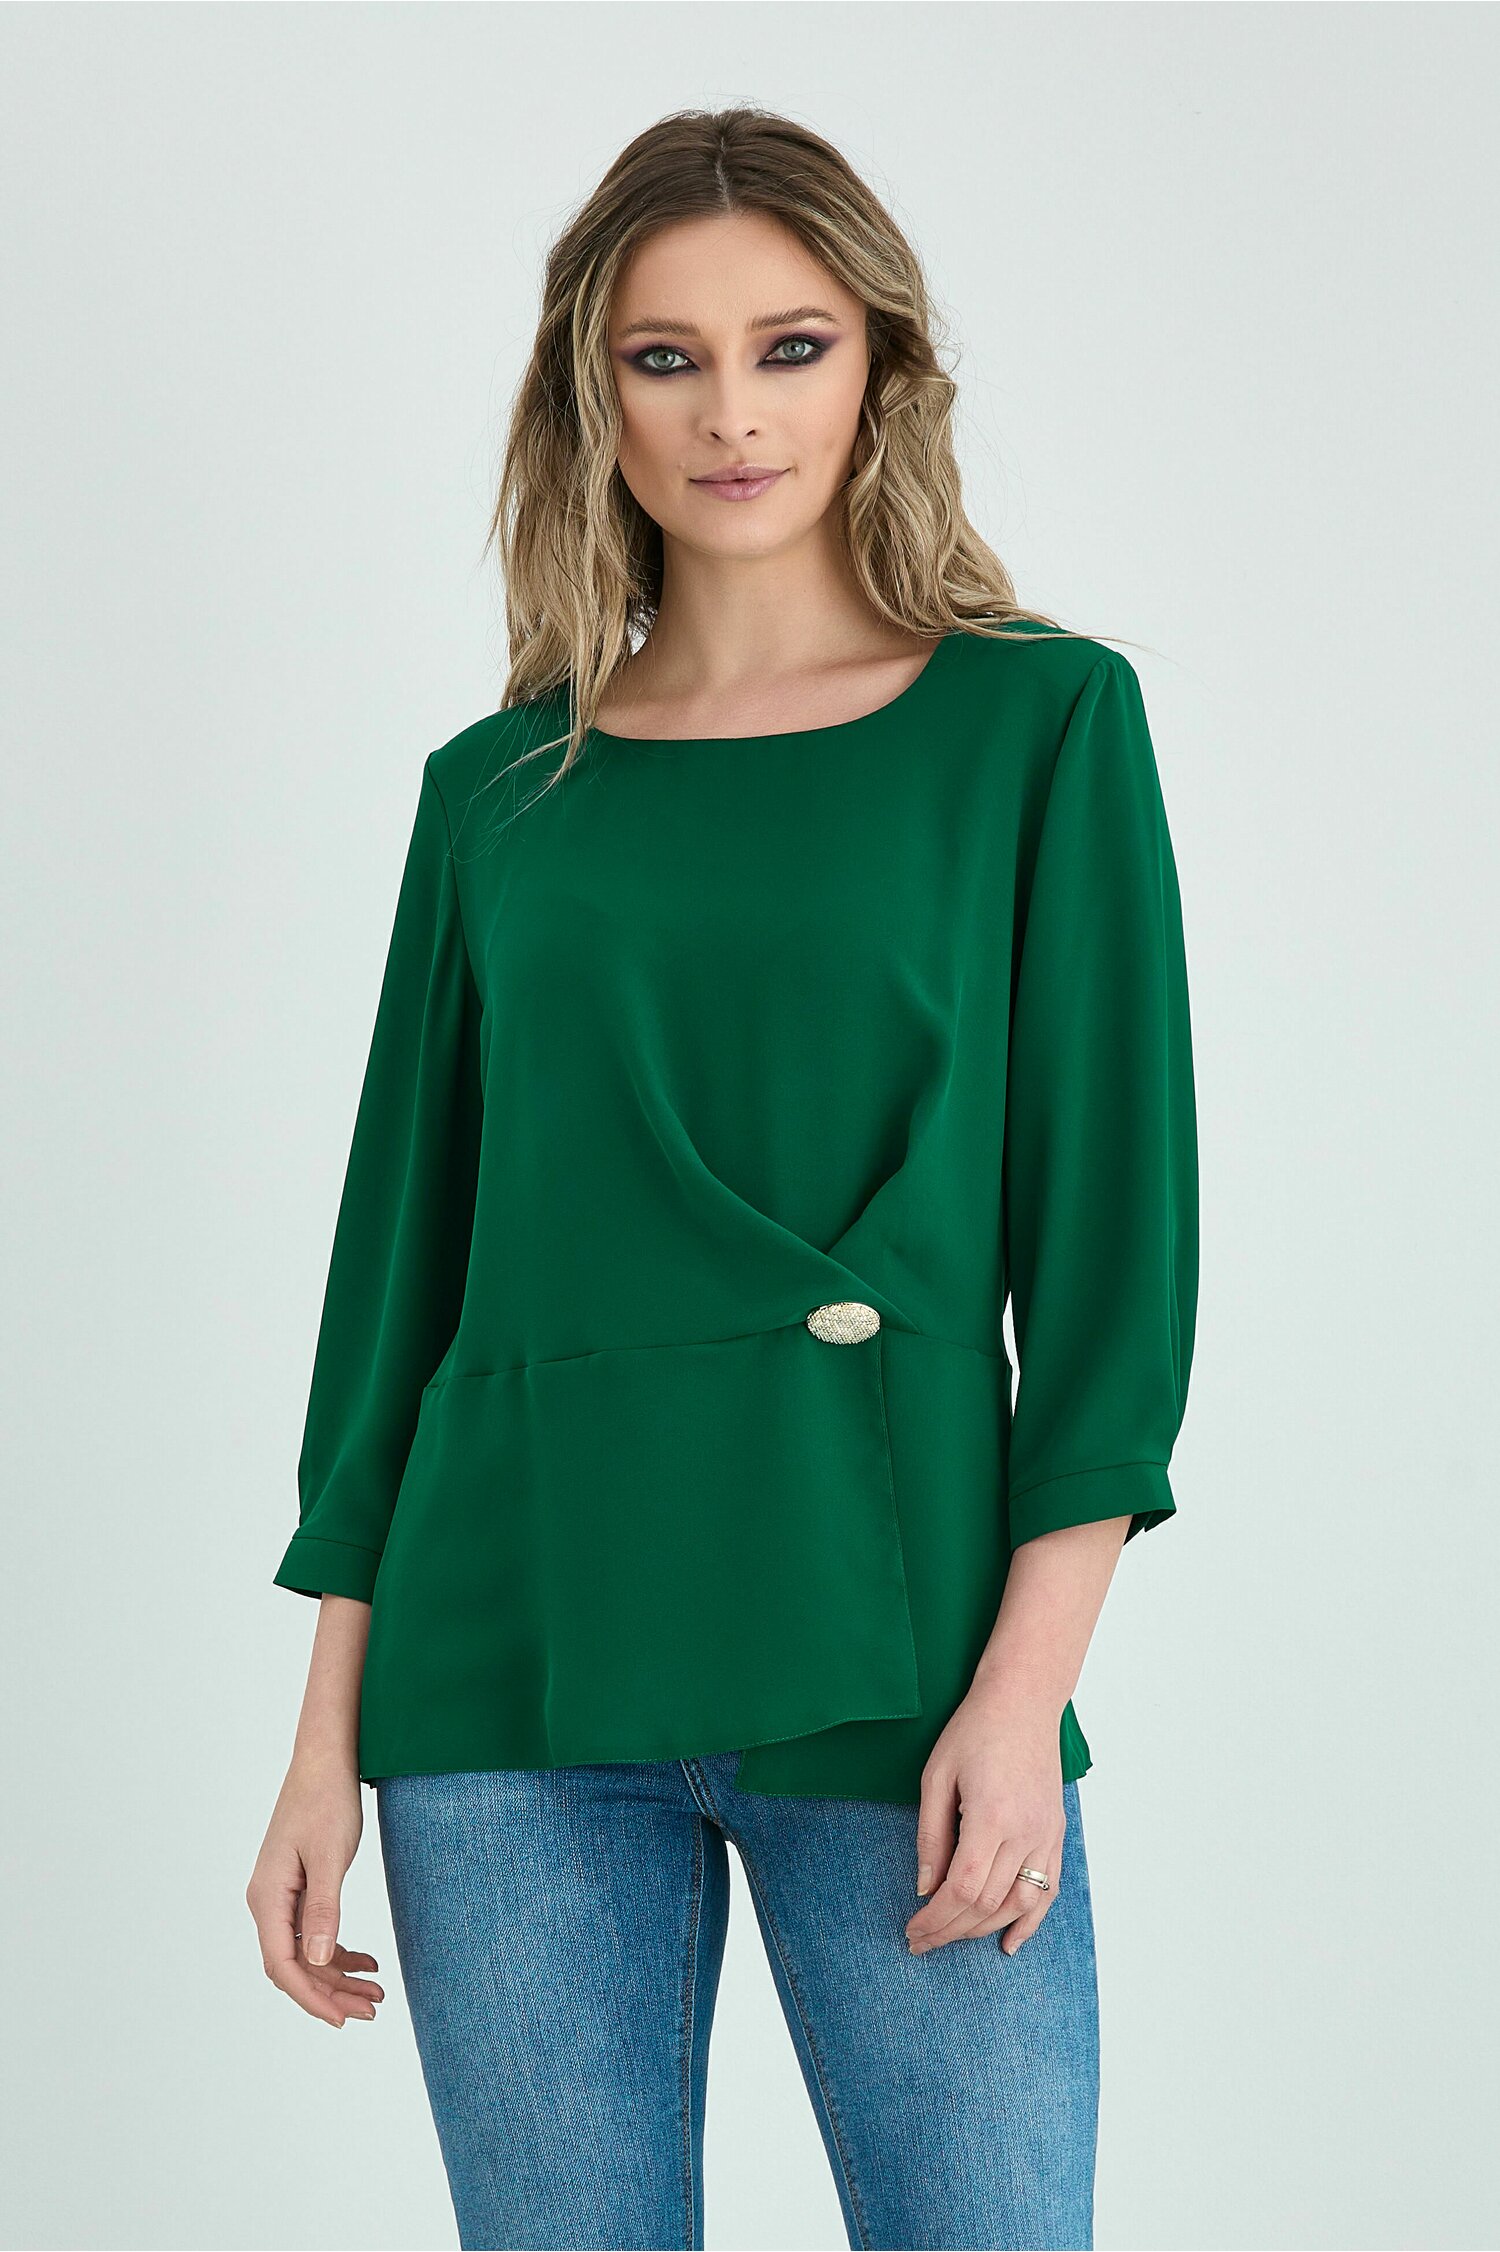 Bluza Janette verde cu accesoriu in talie dyfashion.ro